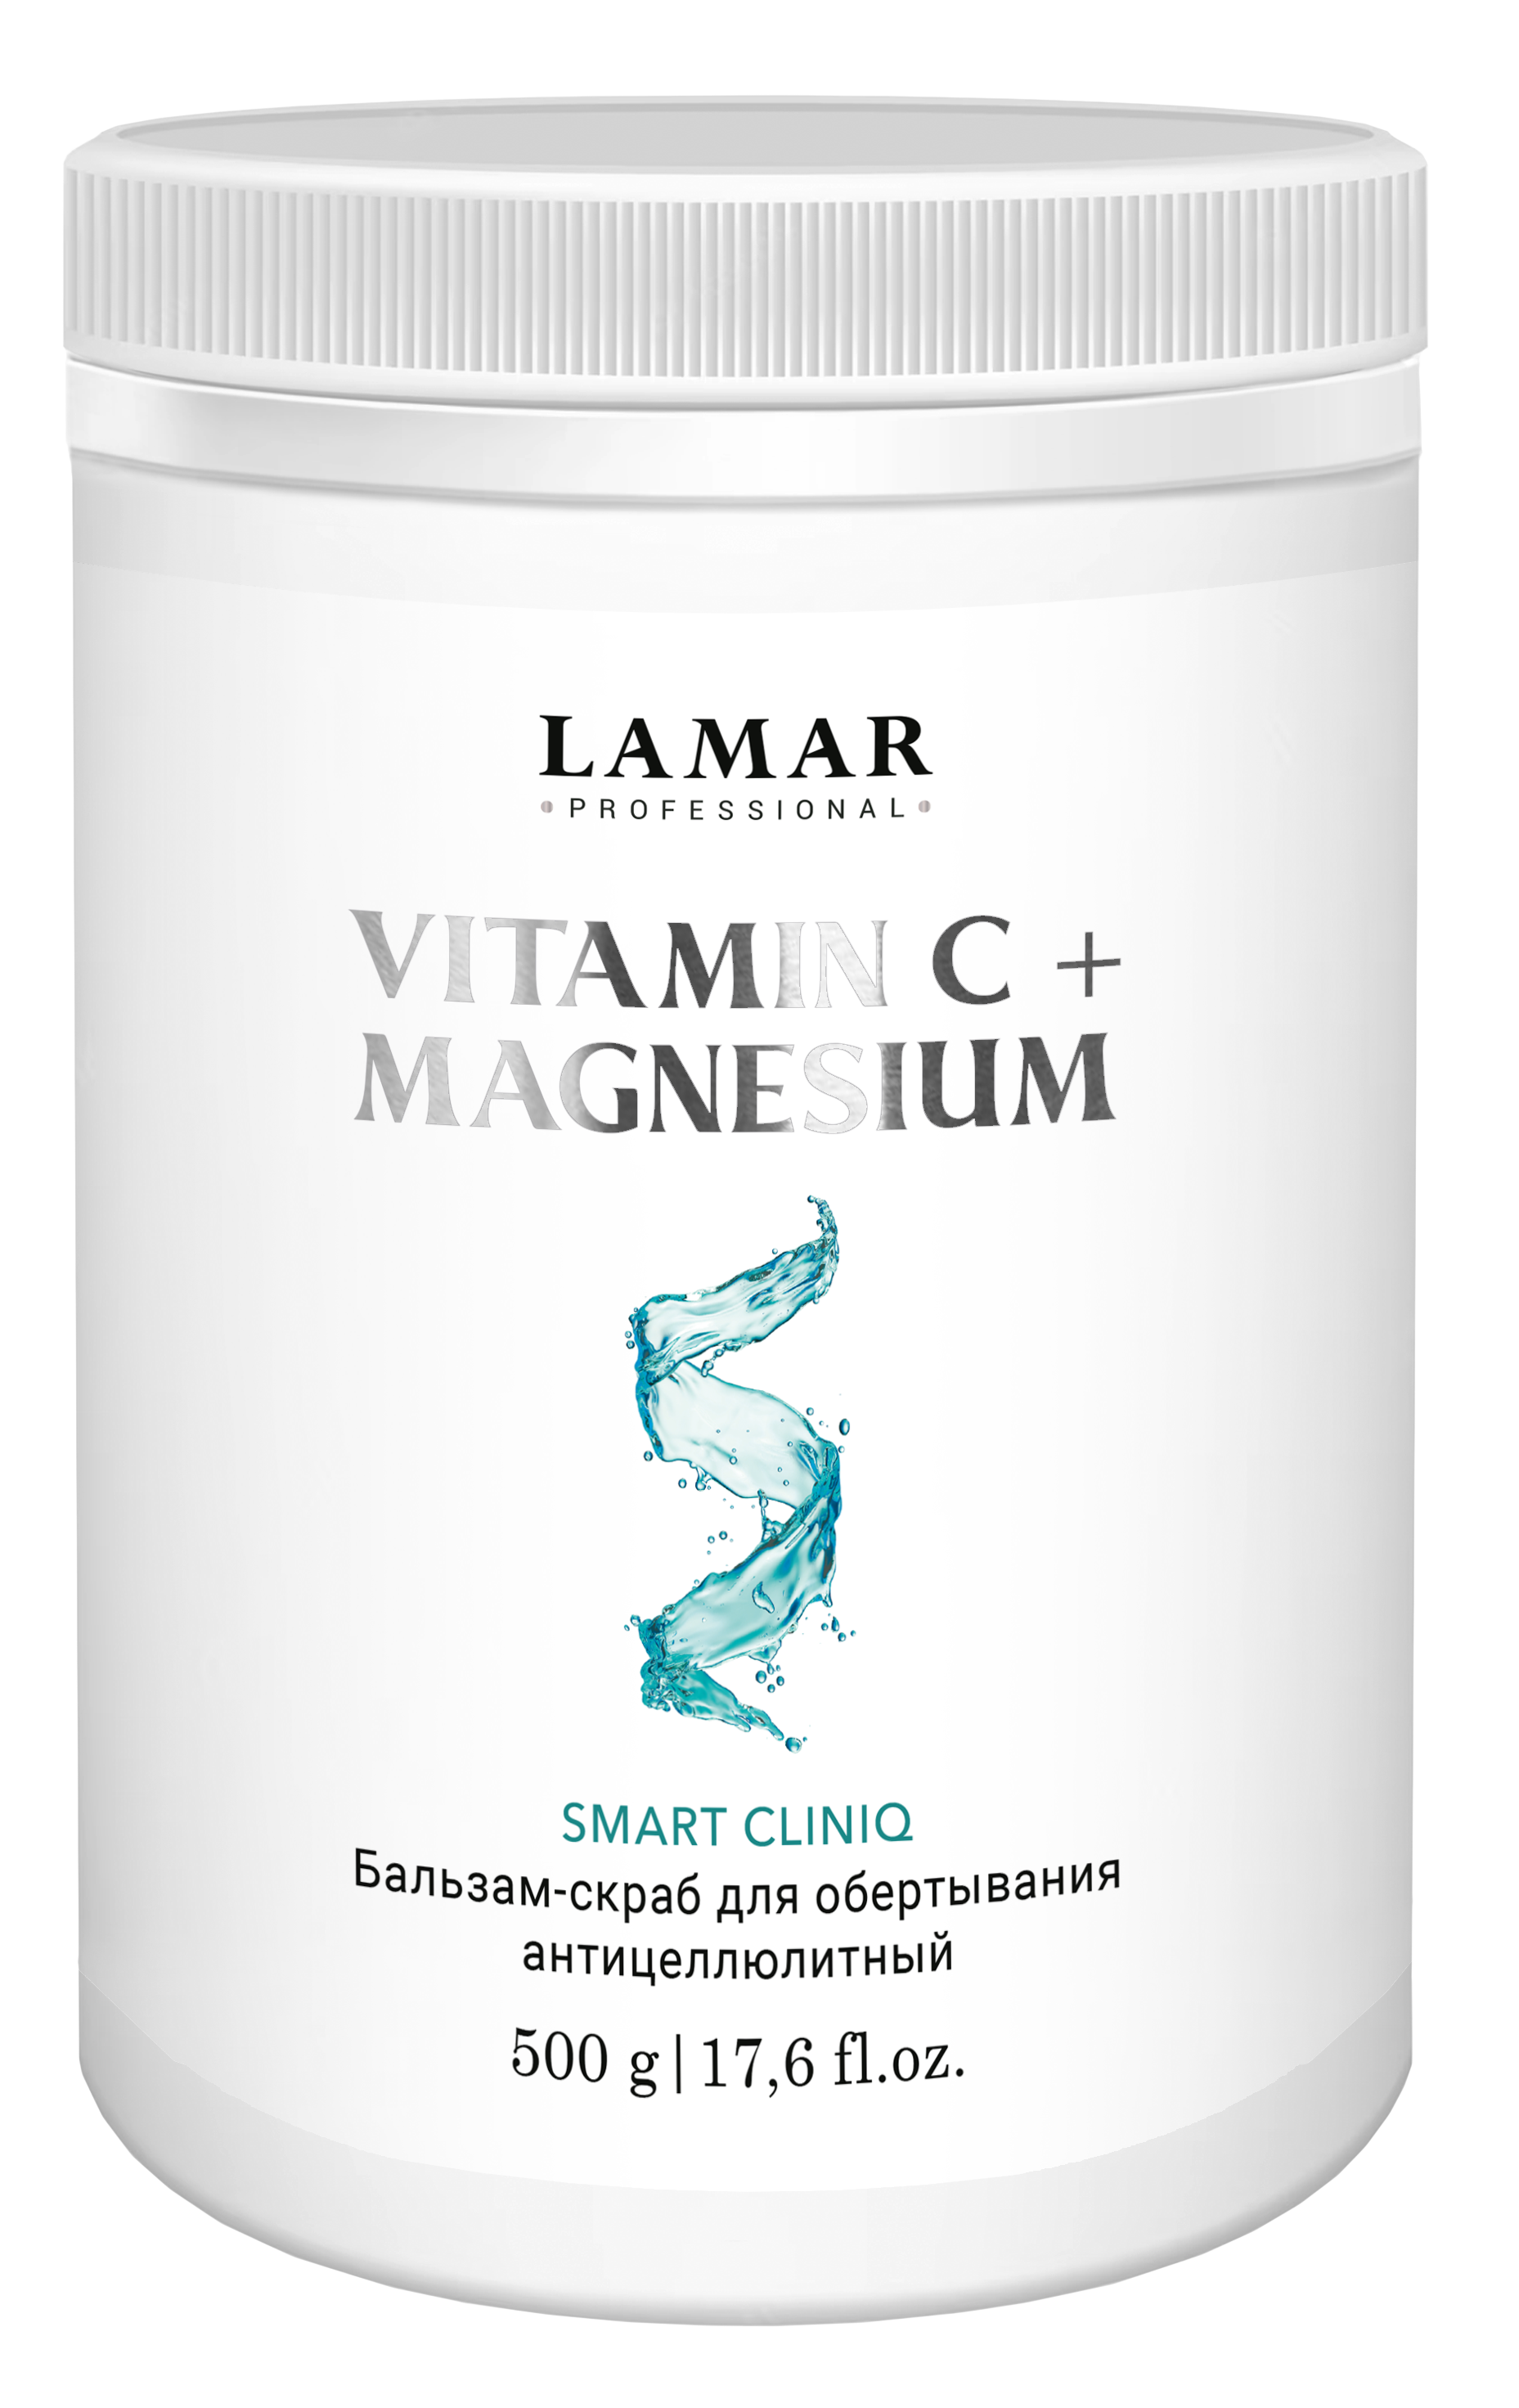 Бальзам-скраб для обертывания Lamar Professional антицеллюлитный VITAMIN C MAGNESIUM 500 г